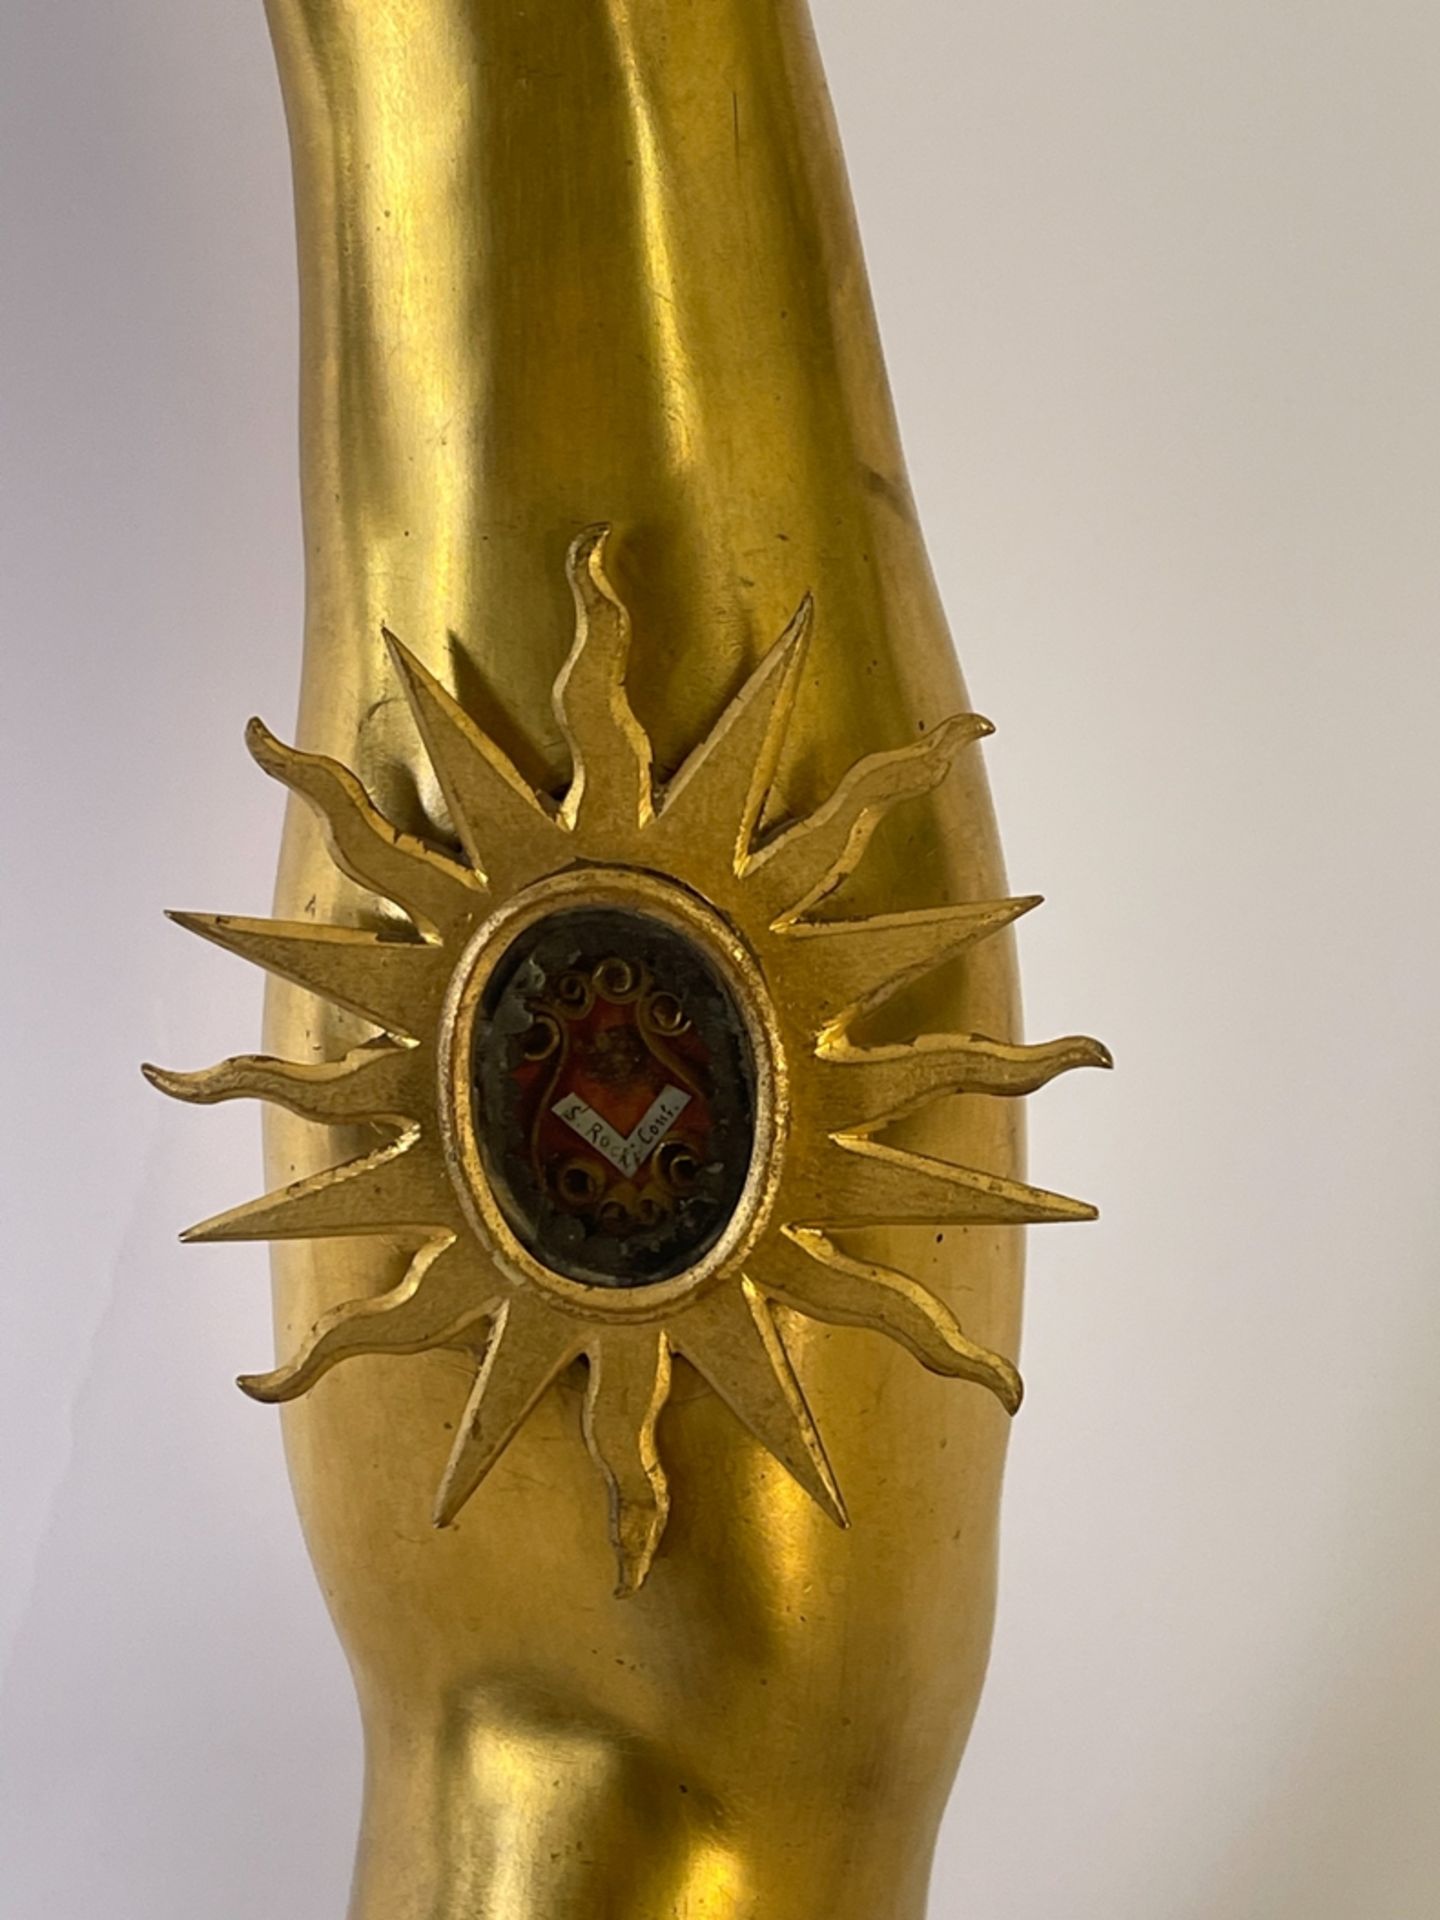 Museumsstück "Arm Reliquar" - Image 3 of 11